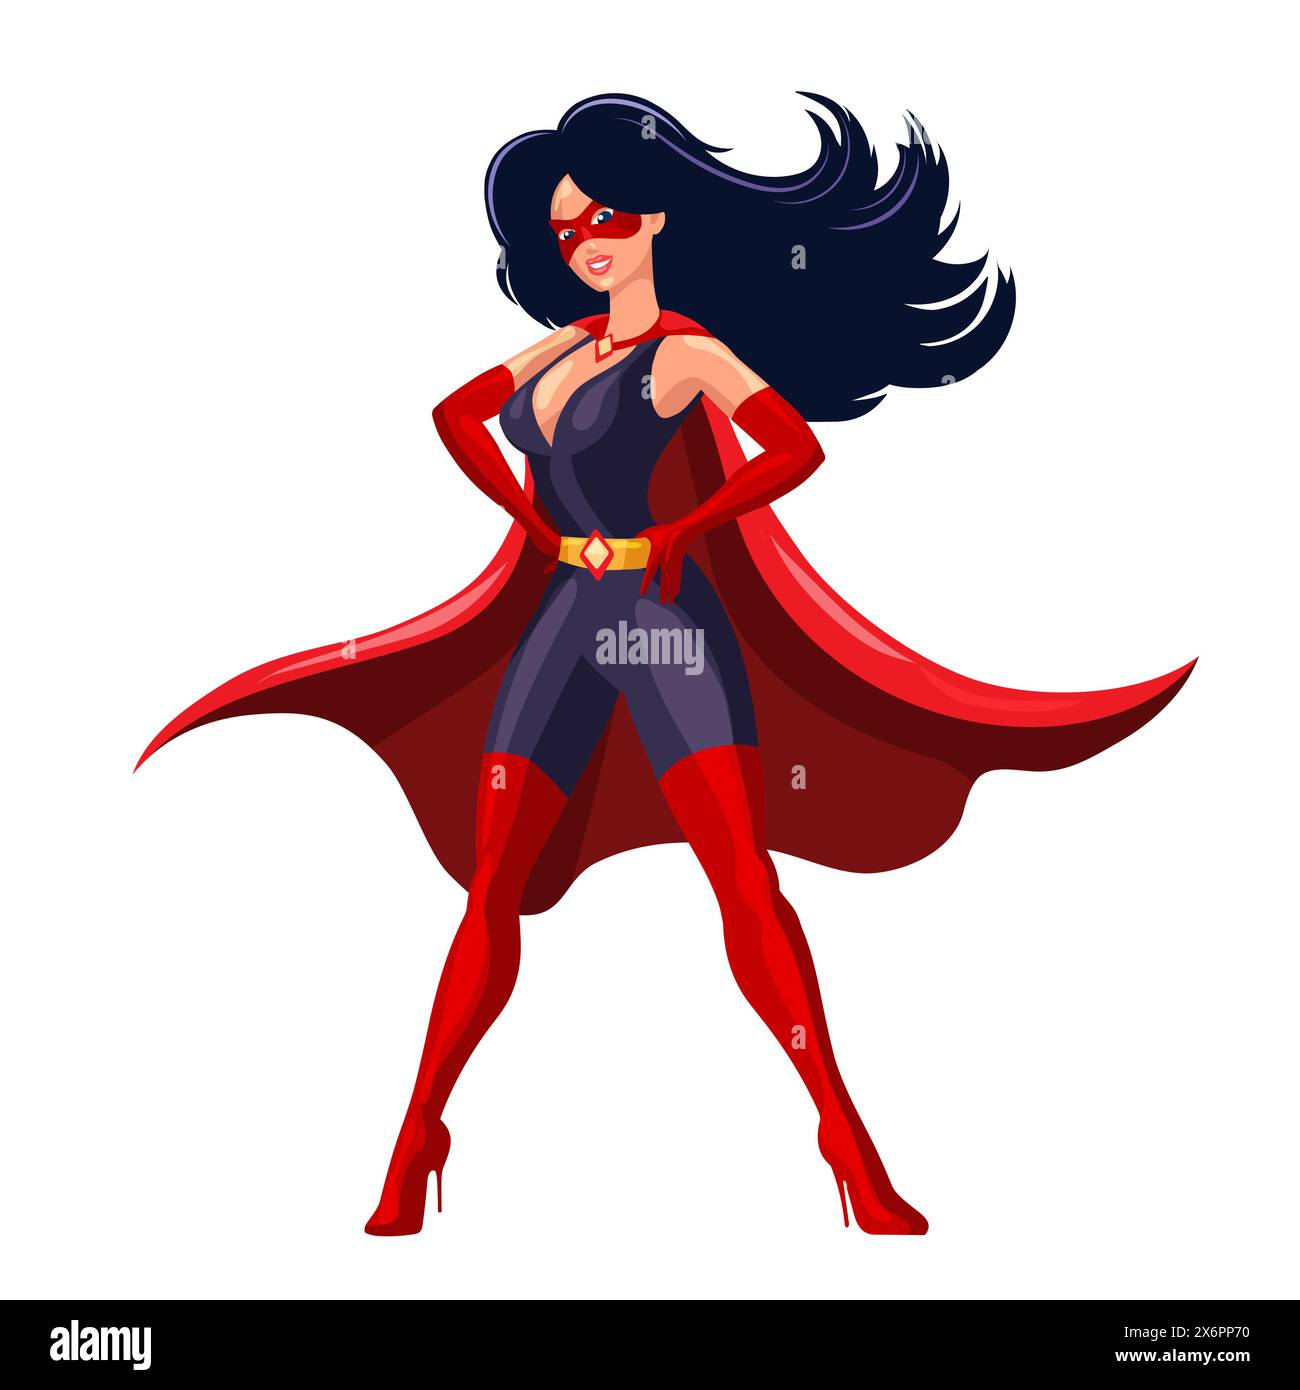 Dessin animé super-héros féminin dans une cape rouge et masque dans la pose courageuse dans isolé sur fond blanc. Illustration vectorielle. Aucun logiciel d'IA n'a été utilisé. Illustration de Vecteur